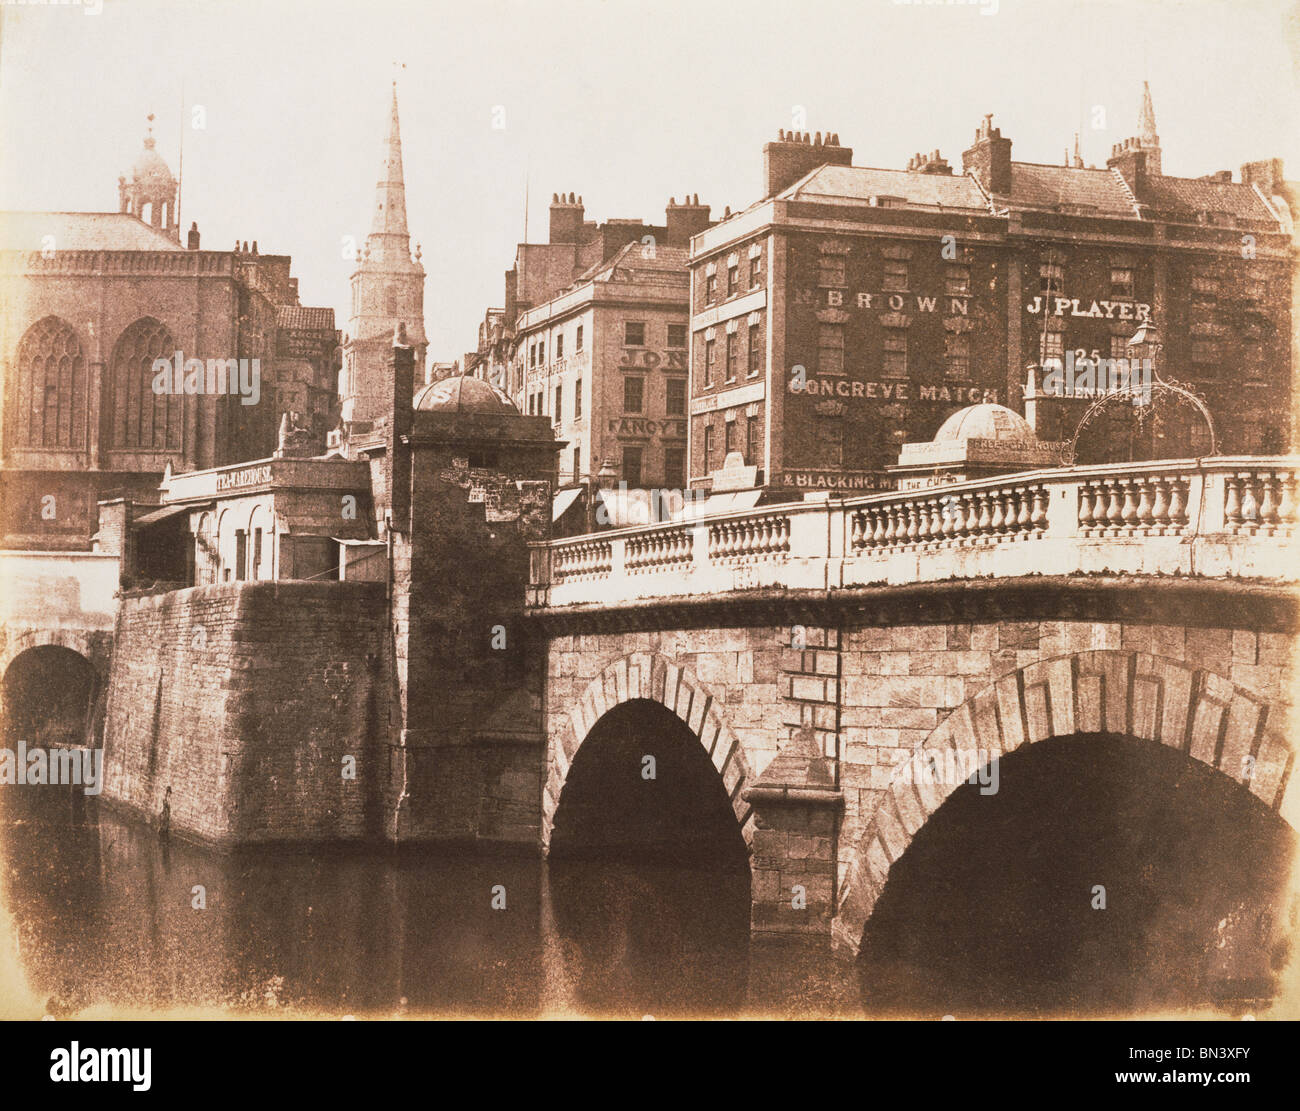 Estudio de un puente, foto Calvert Jones. Bristol, Inglaterra, de mediados del siglo XIX. Foto de stock